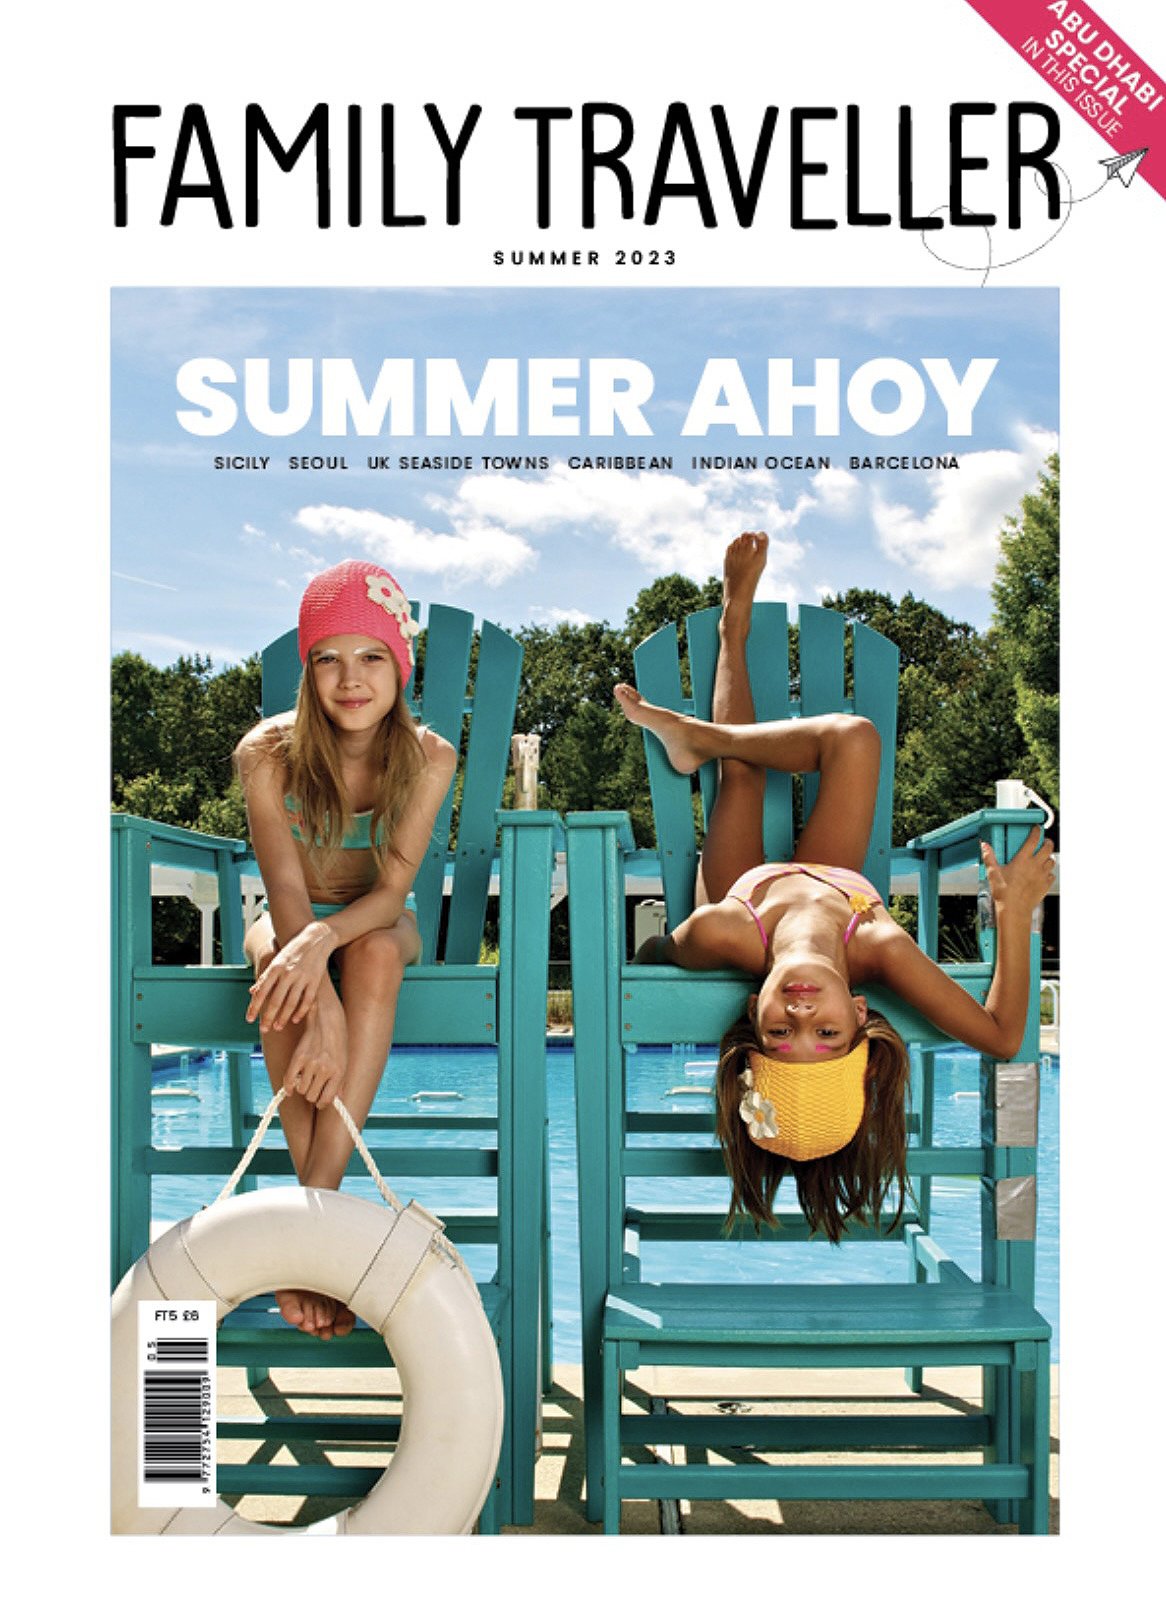 Family Traveller Summer 2023 Cover.jpeg